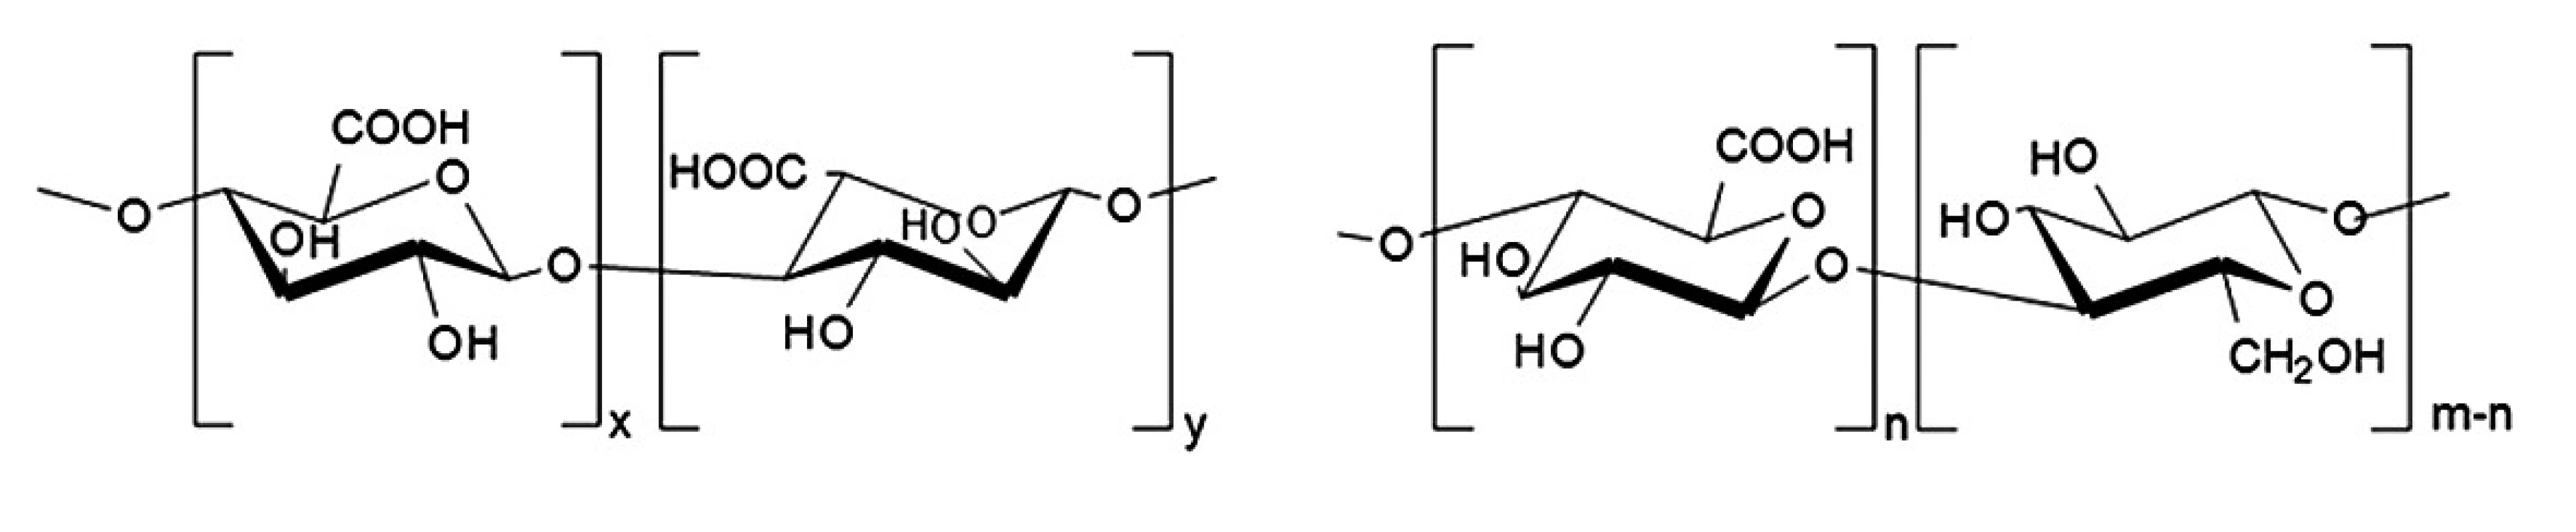 Strukturní vzorce (a) kyselina alginová, (b) oxycelulosa